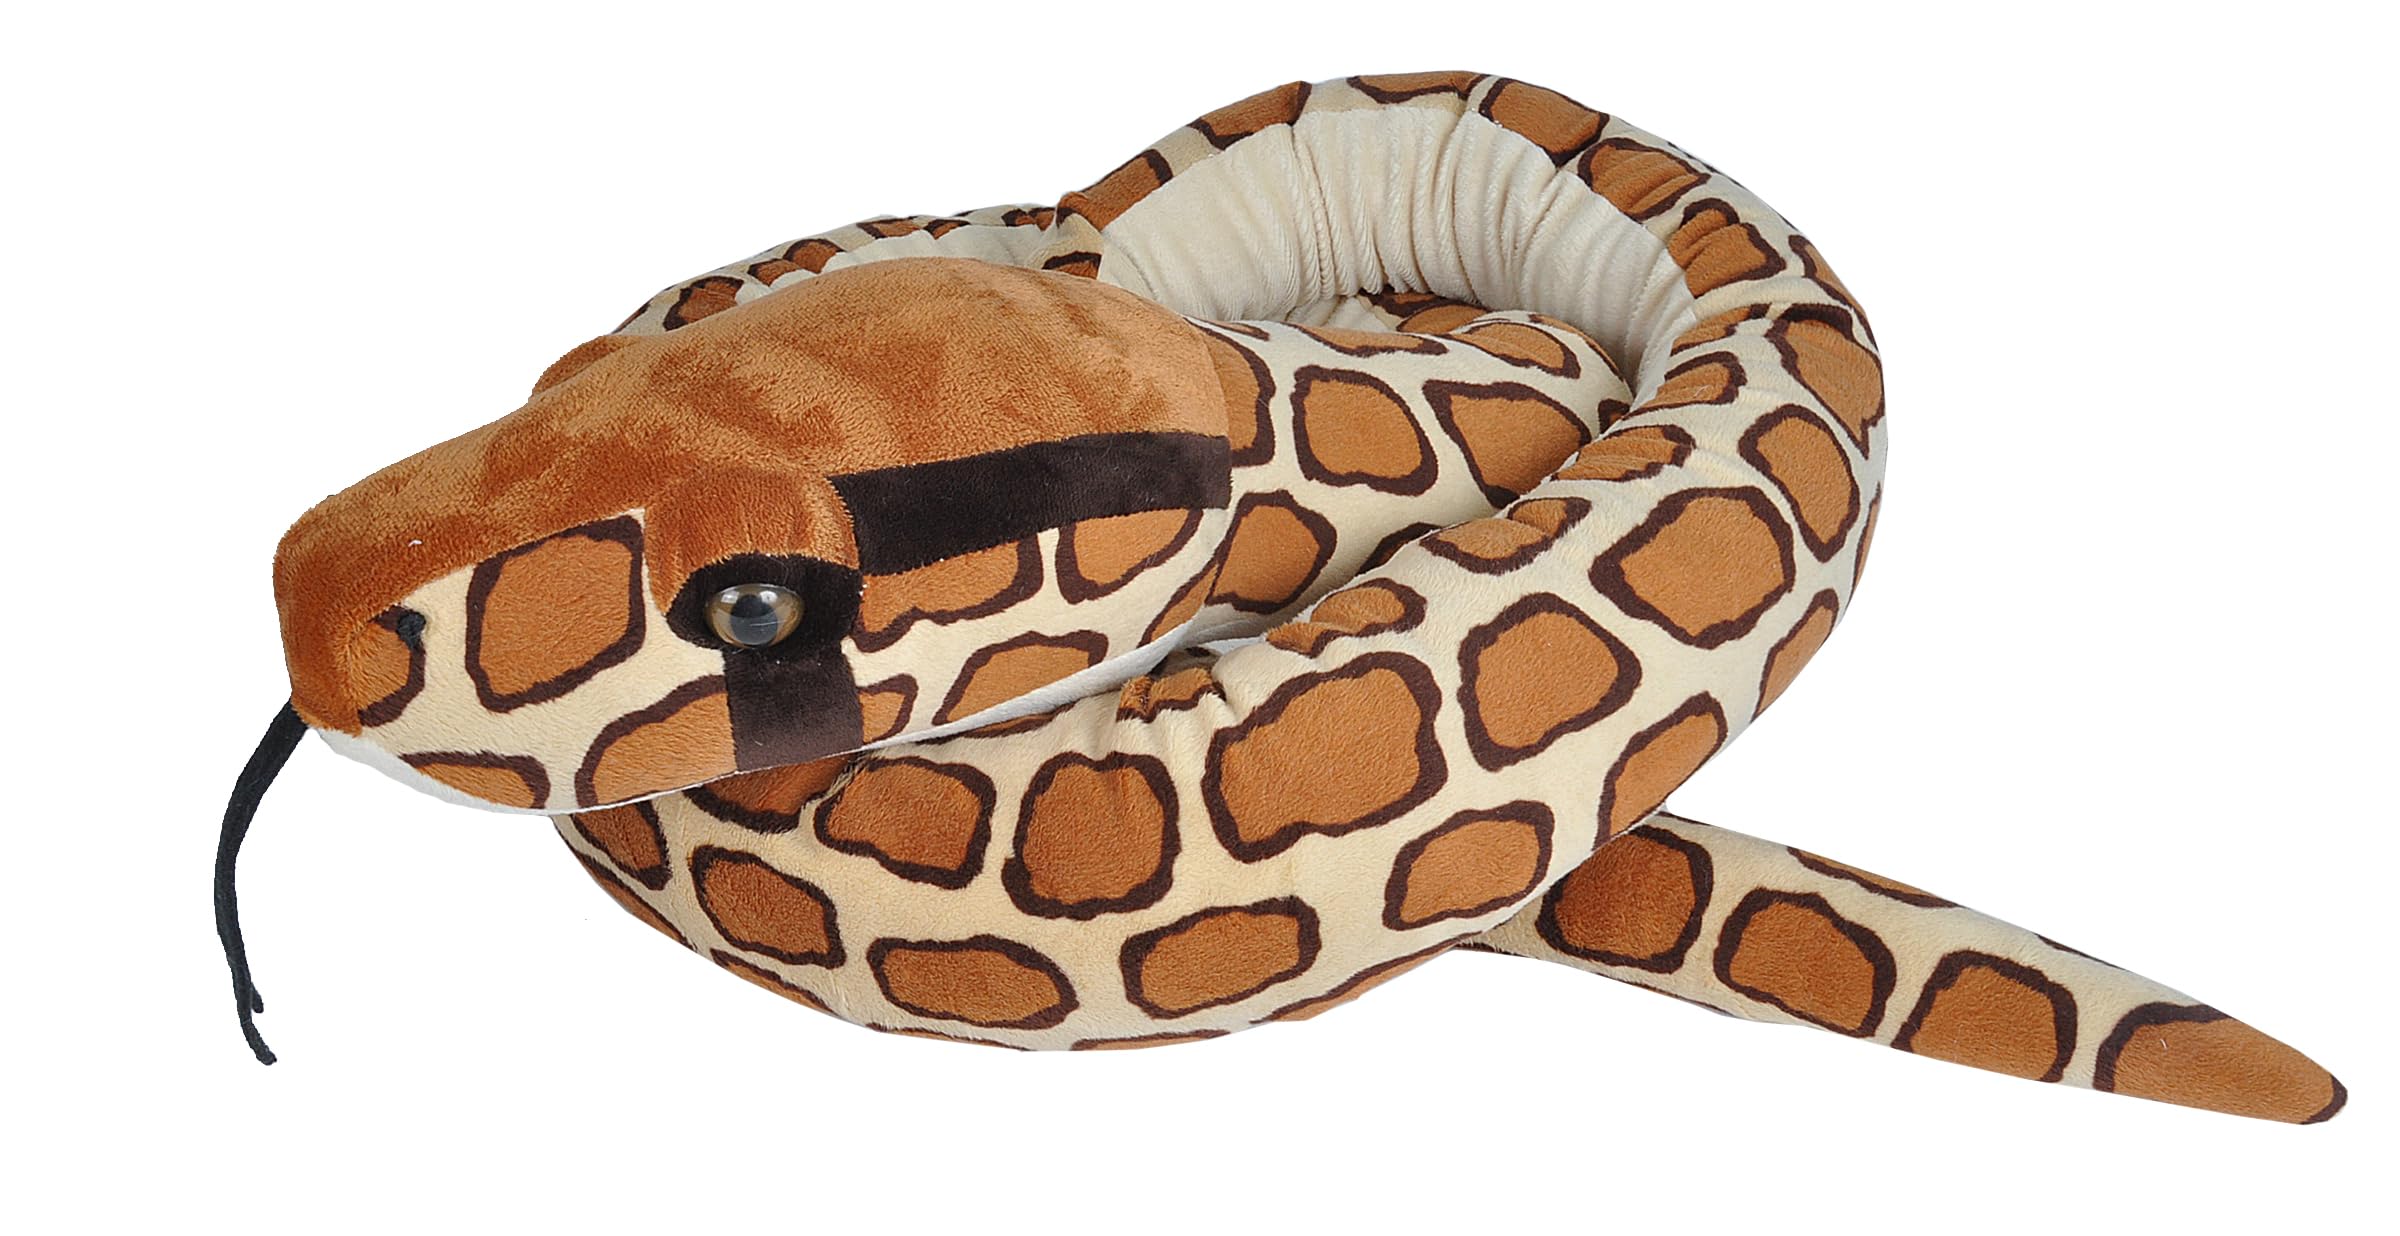 Wild Republic Plush Snake Jumbo Burmesische Python, Plüsch-Schlange, Riesen-Kuscheltier, 280 cm, Baby Shower Geschenk, Stofftier, Füllung aus recycelten Wasserflaschen